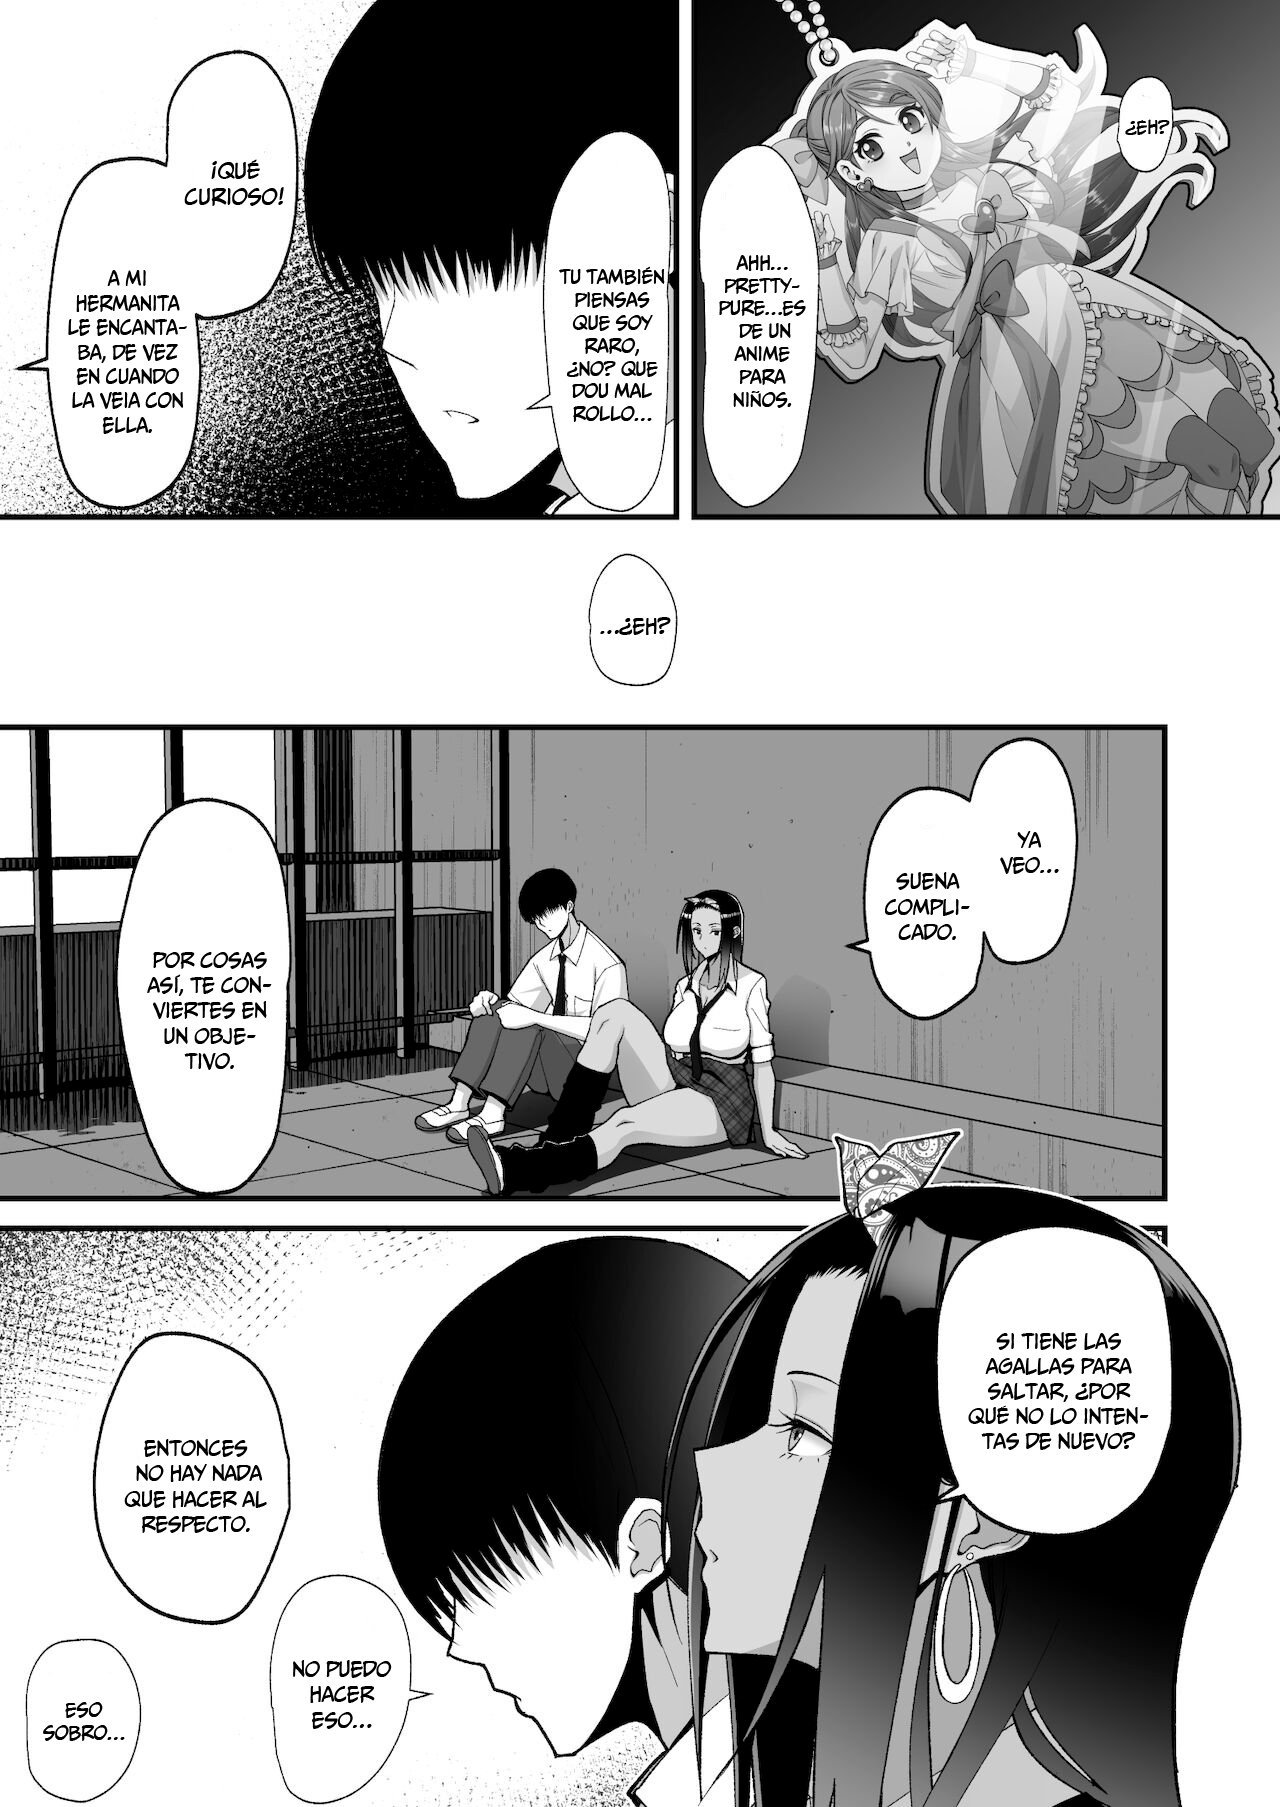 La historia sobre una amorosa gal otaku - 3